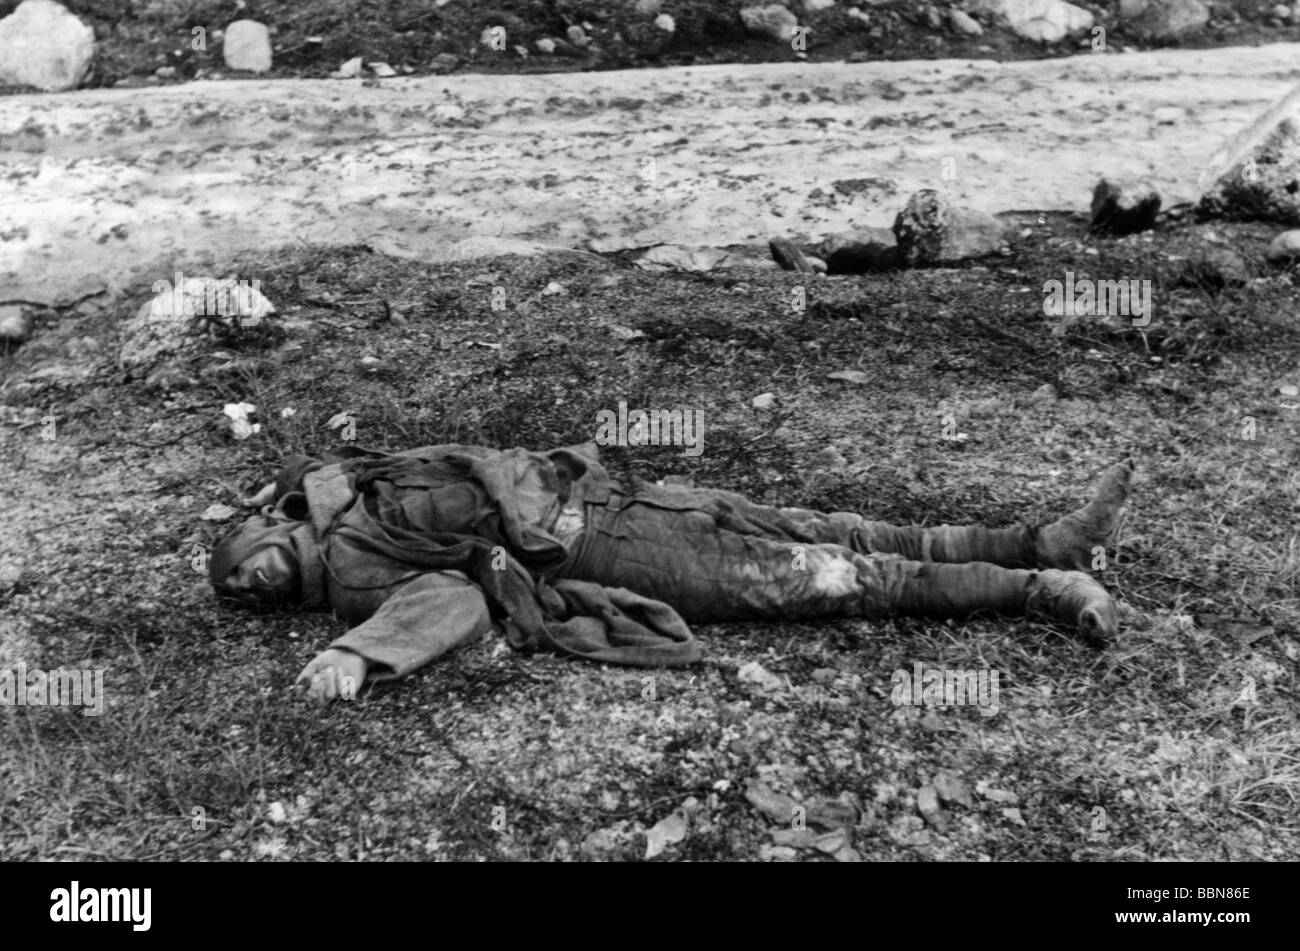 Eventi, Seconda guerra mondiale / seconda guerra mondiale, Russia, soldati caduti / corpi morti, soldato sovietico caduto, circa 1942, Foto Stock